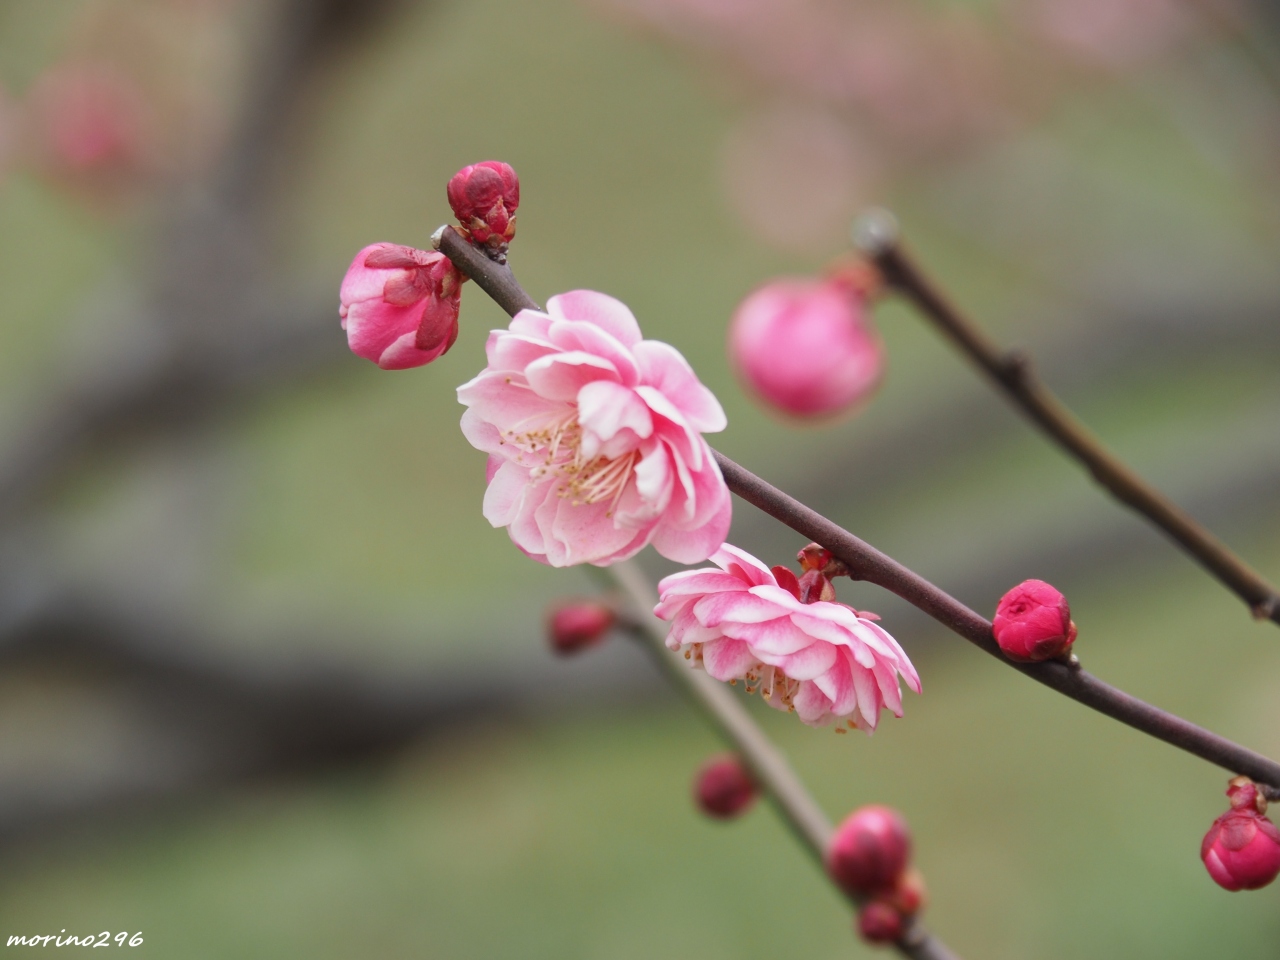 寒空に蕾も縮む梅の花 大倉山梅林 横浜 神奈川県 の旅行記 ブログ By Morino296さん フォートラベル